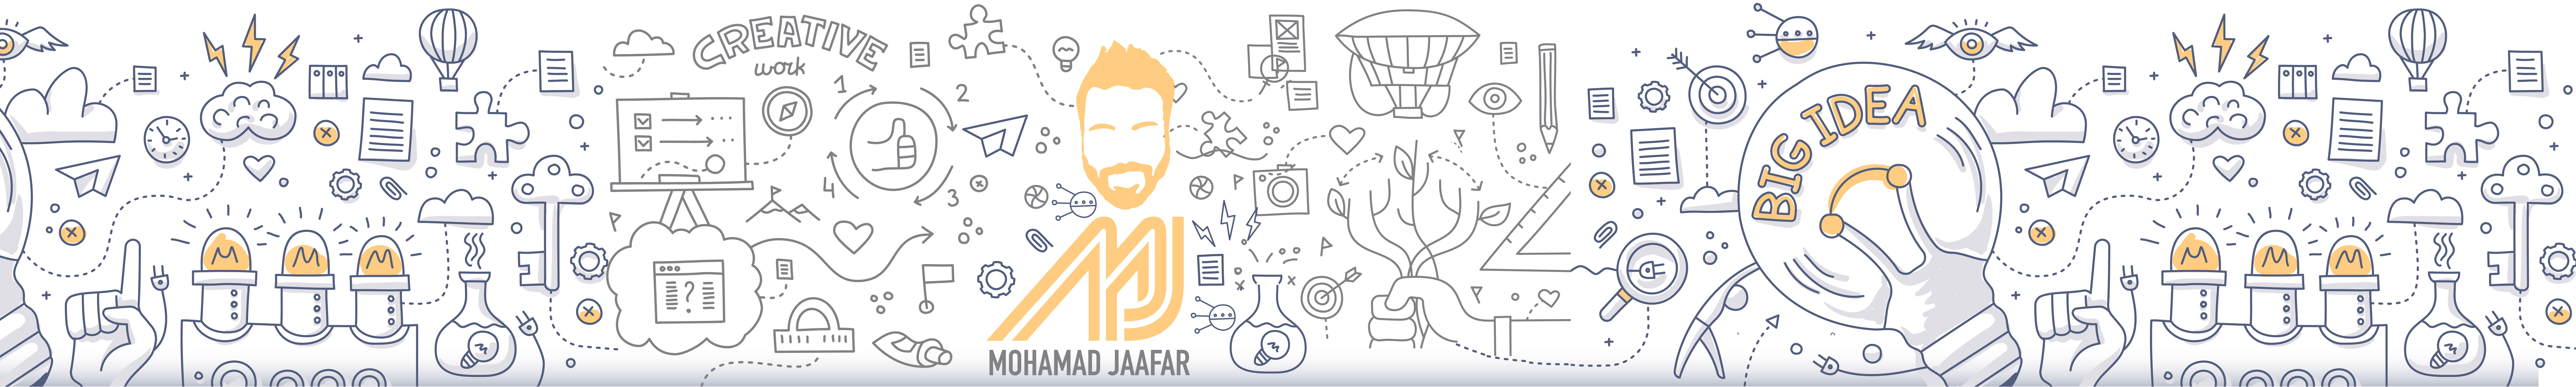 Banner del profilo di mohamad jaafar